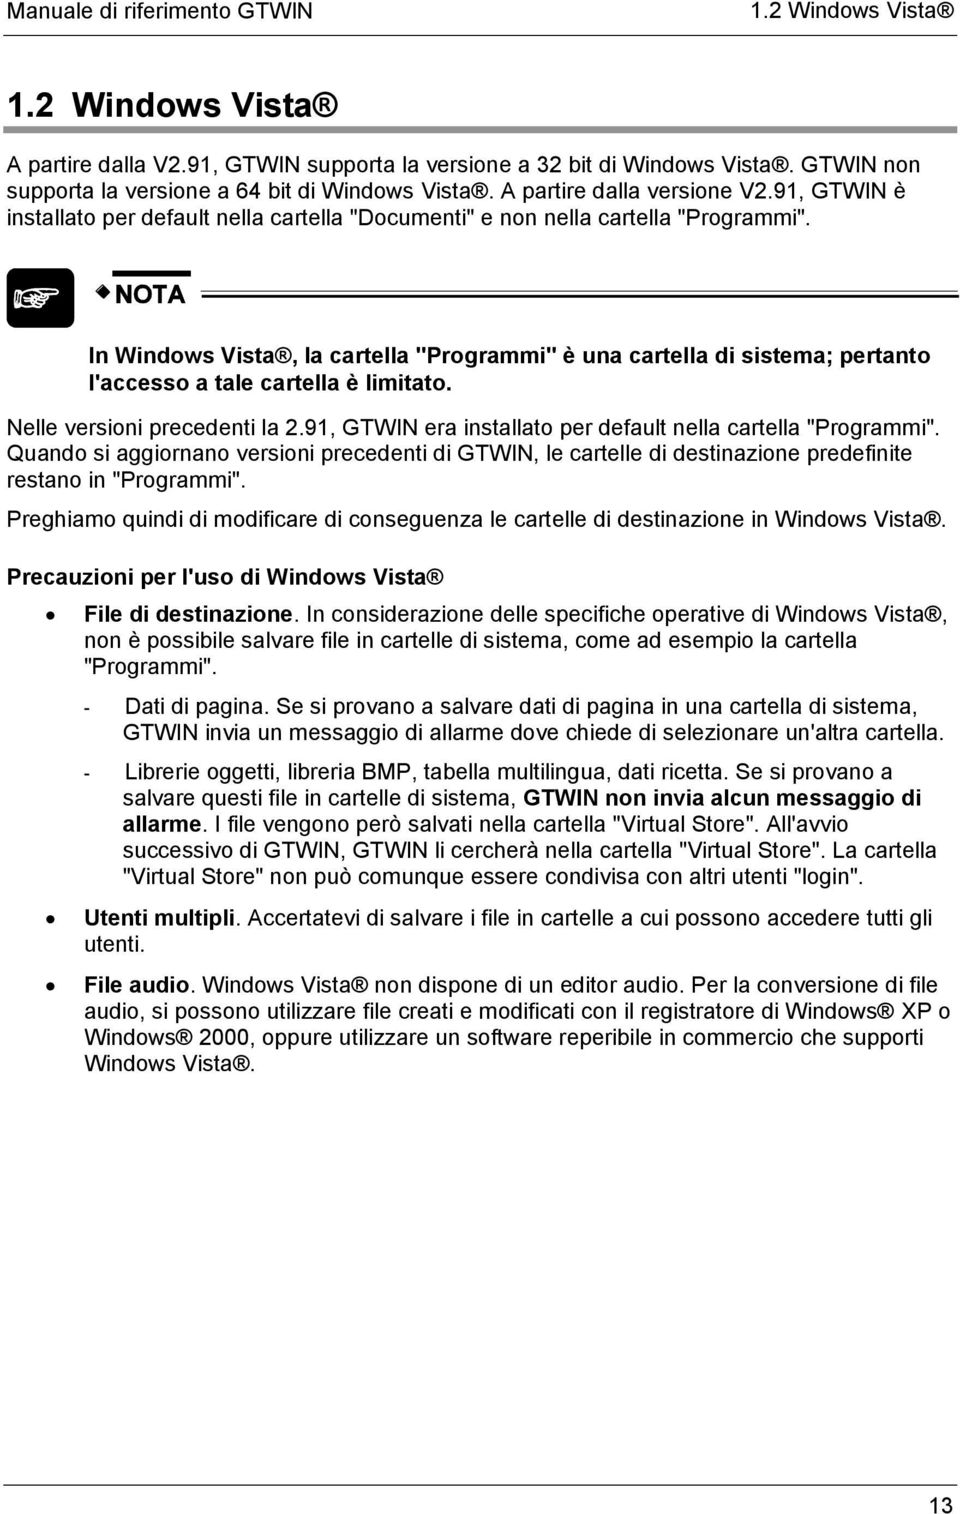 In Windows Vista, la cartella "Programmi" è una cartella di sistema; pertanto l'accesso a tale cartella è limitato. Nelle versioni precedenti la 2.